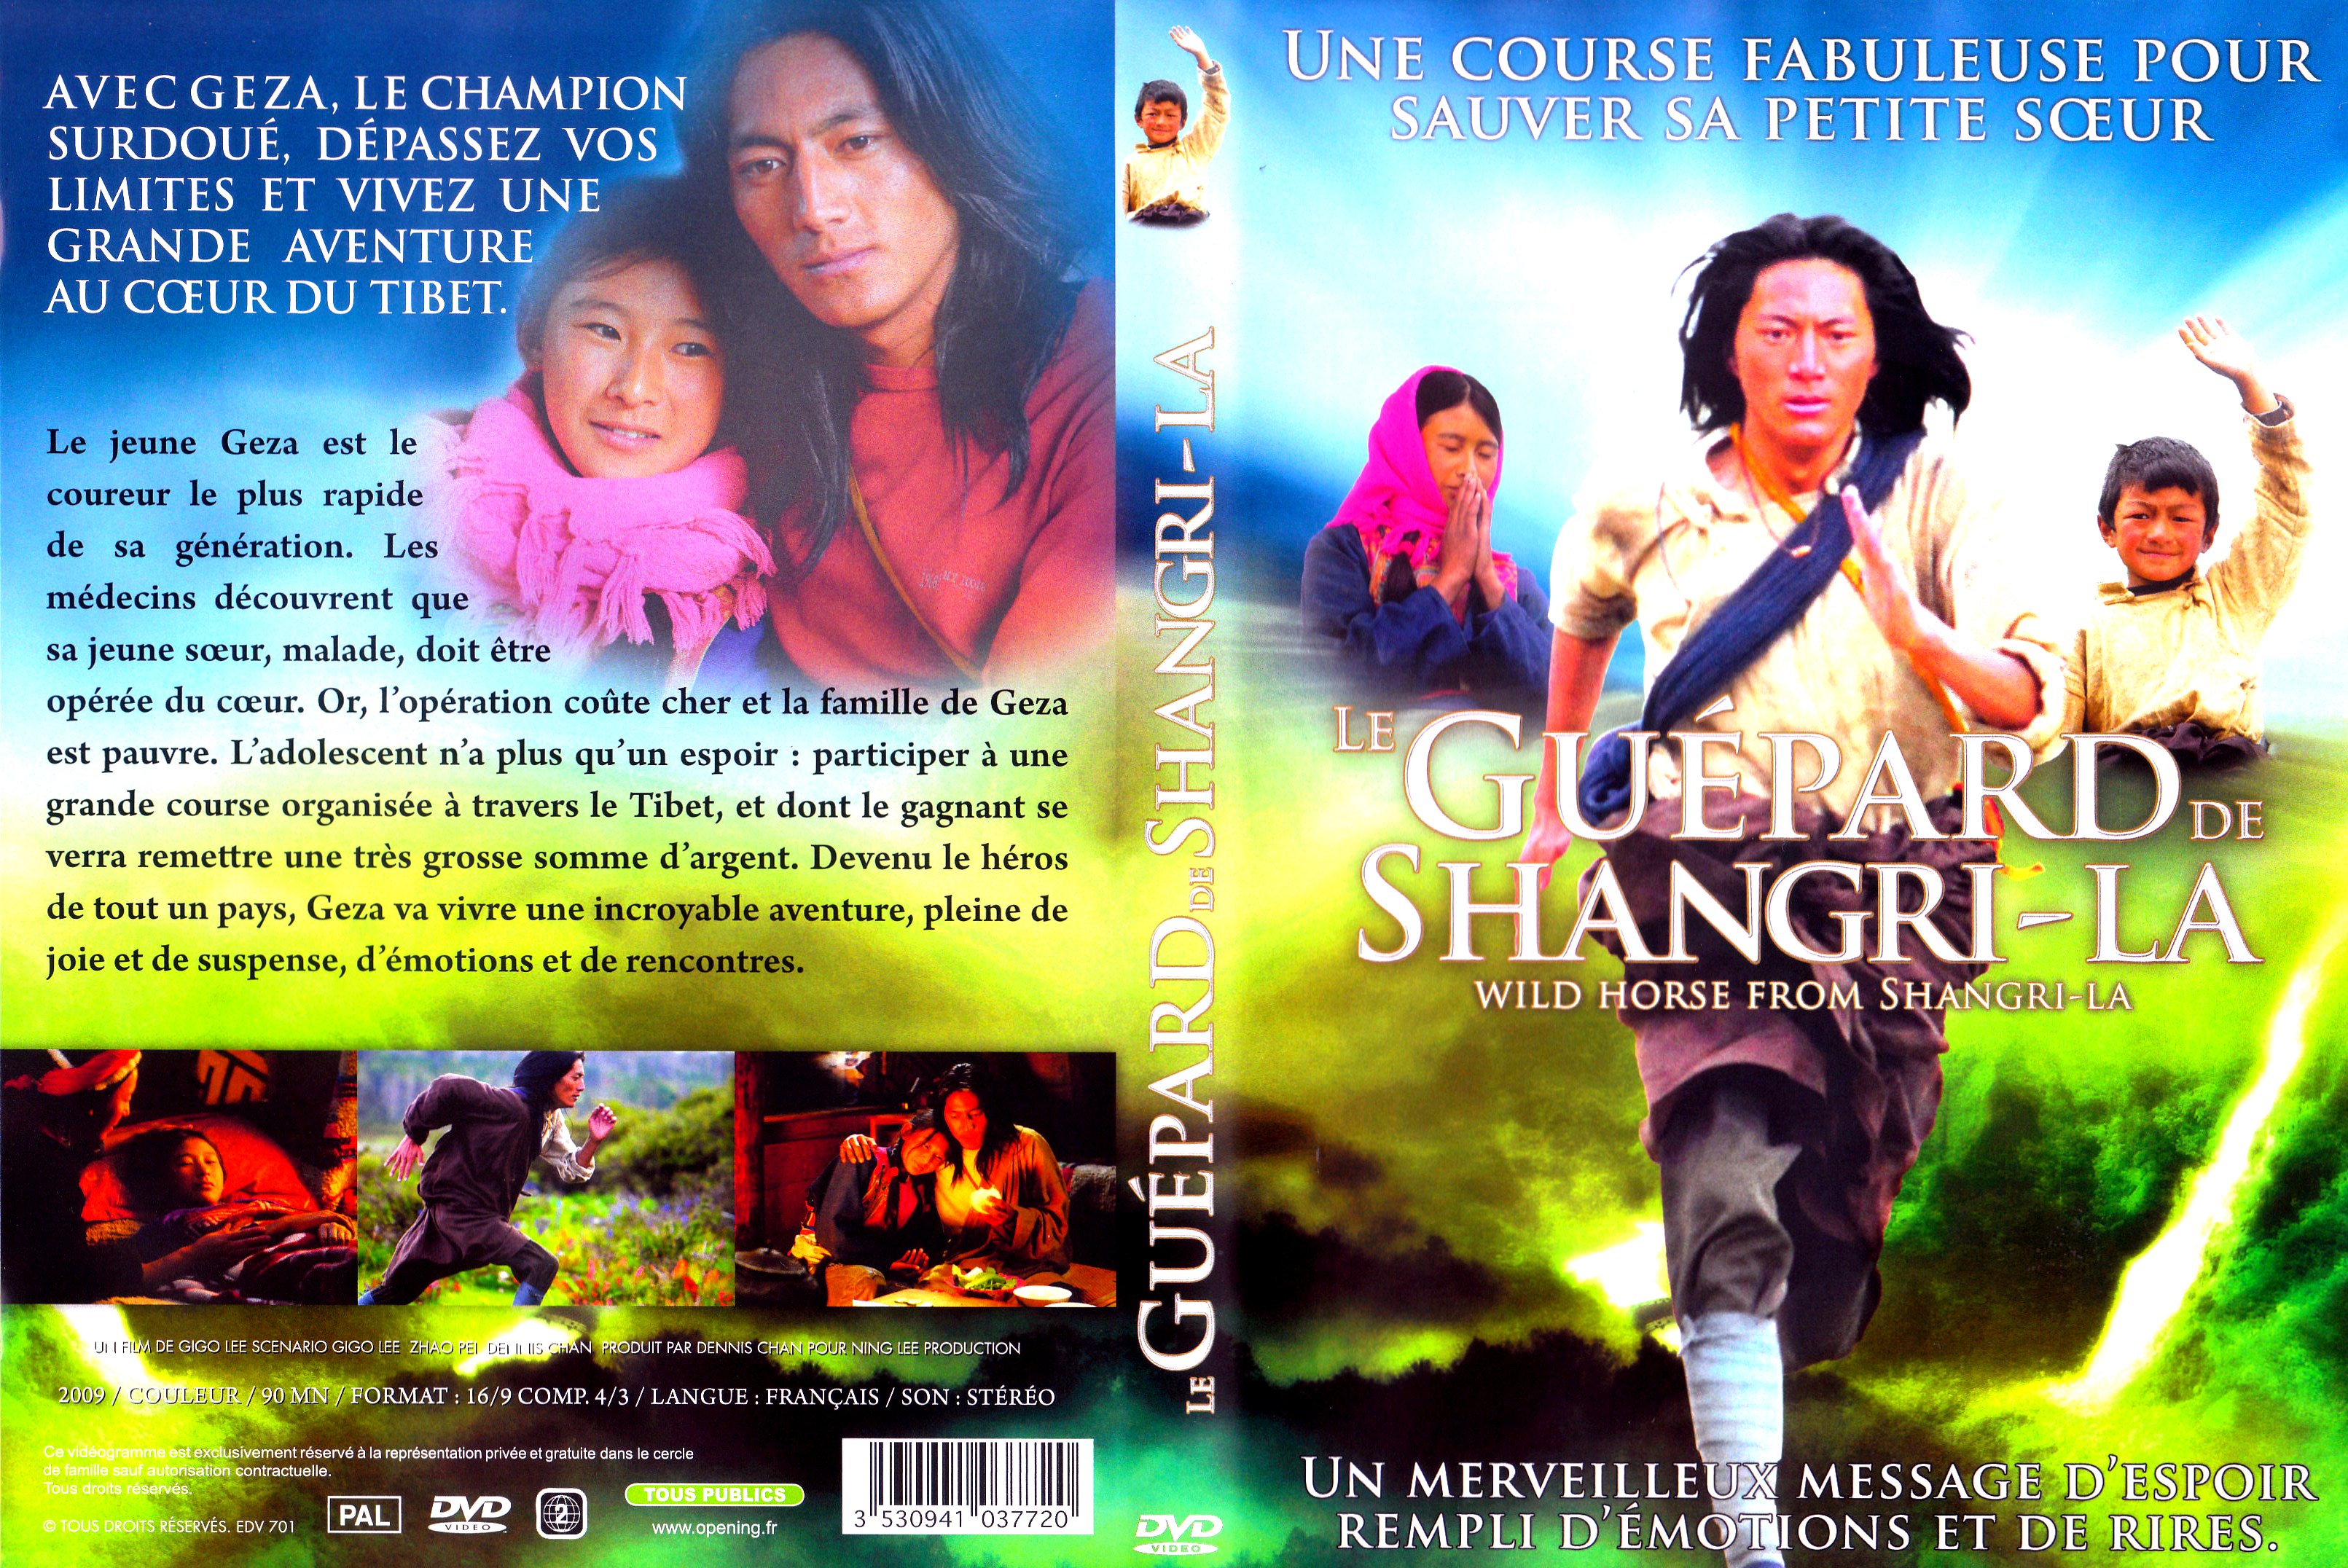 Jaquette DVD Le gupard de Shangri-la